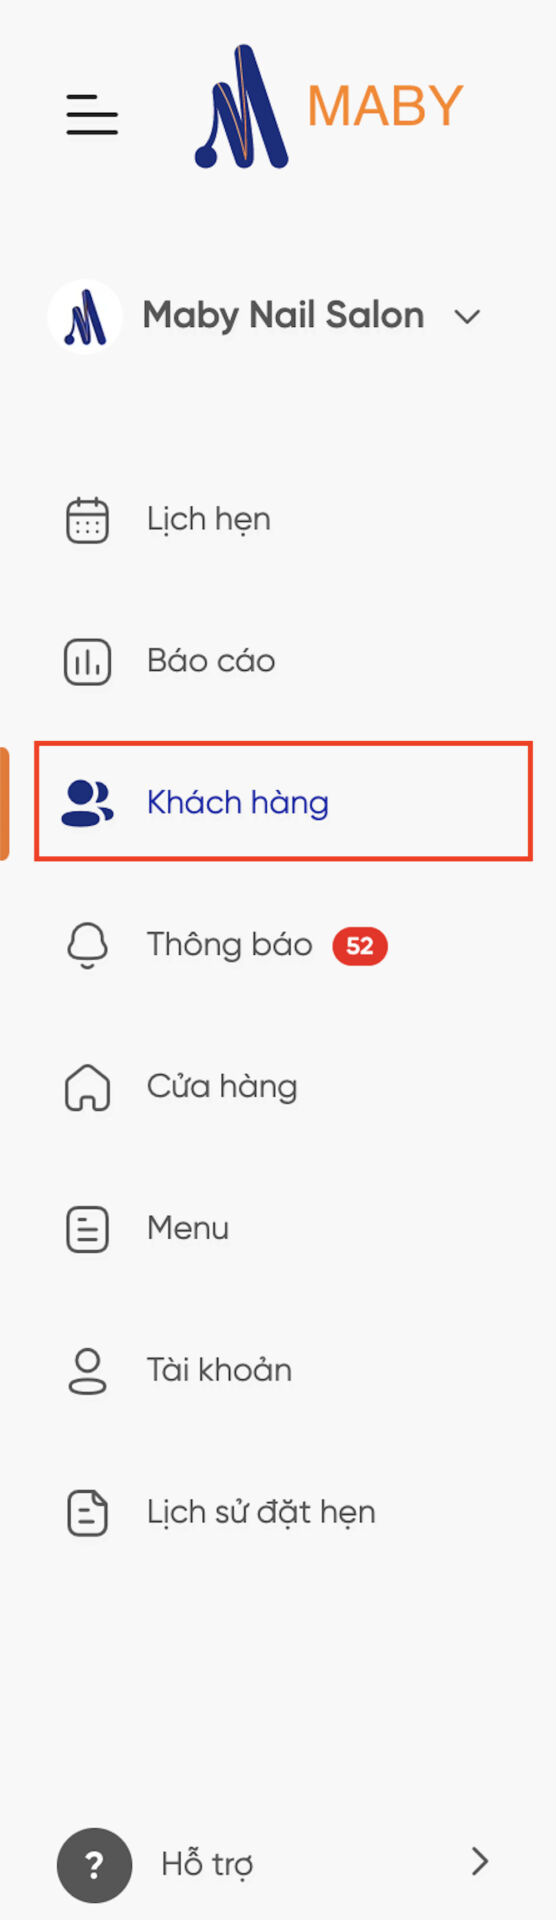 huong-dan-gui-SMS-hang-loat-cho-khach-1